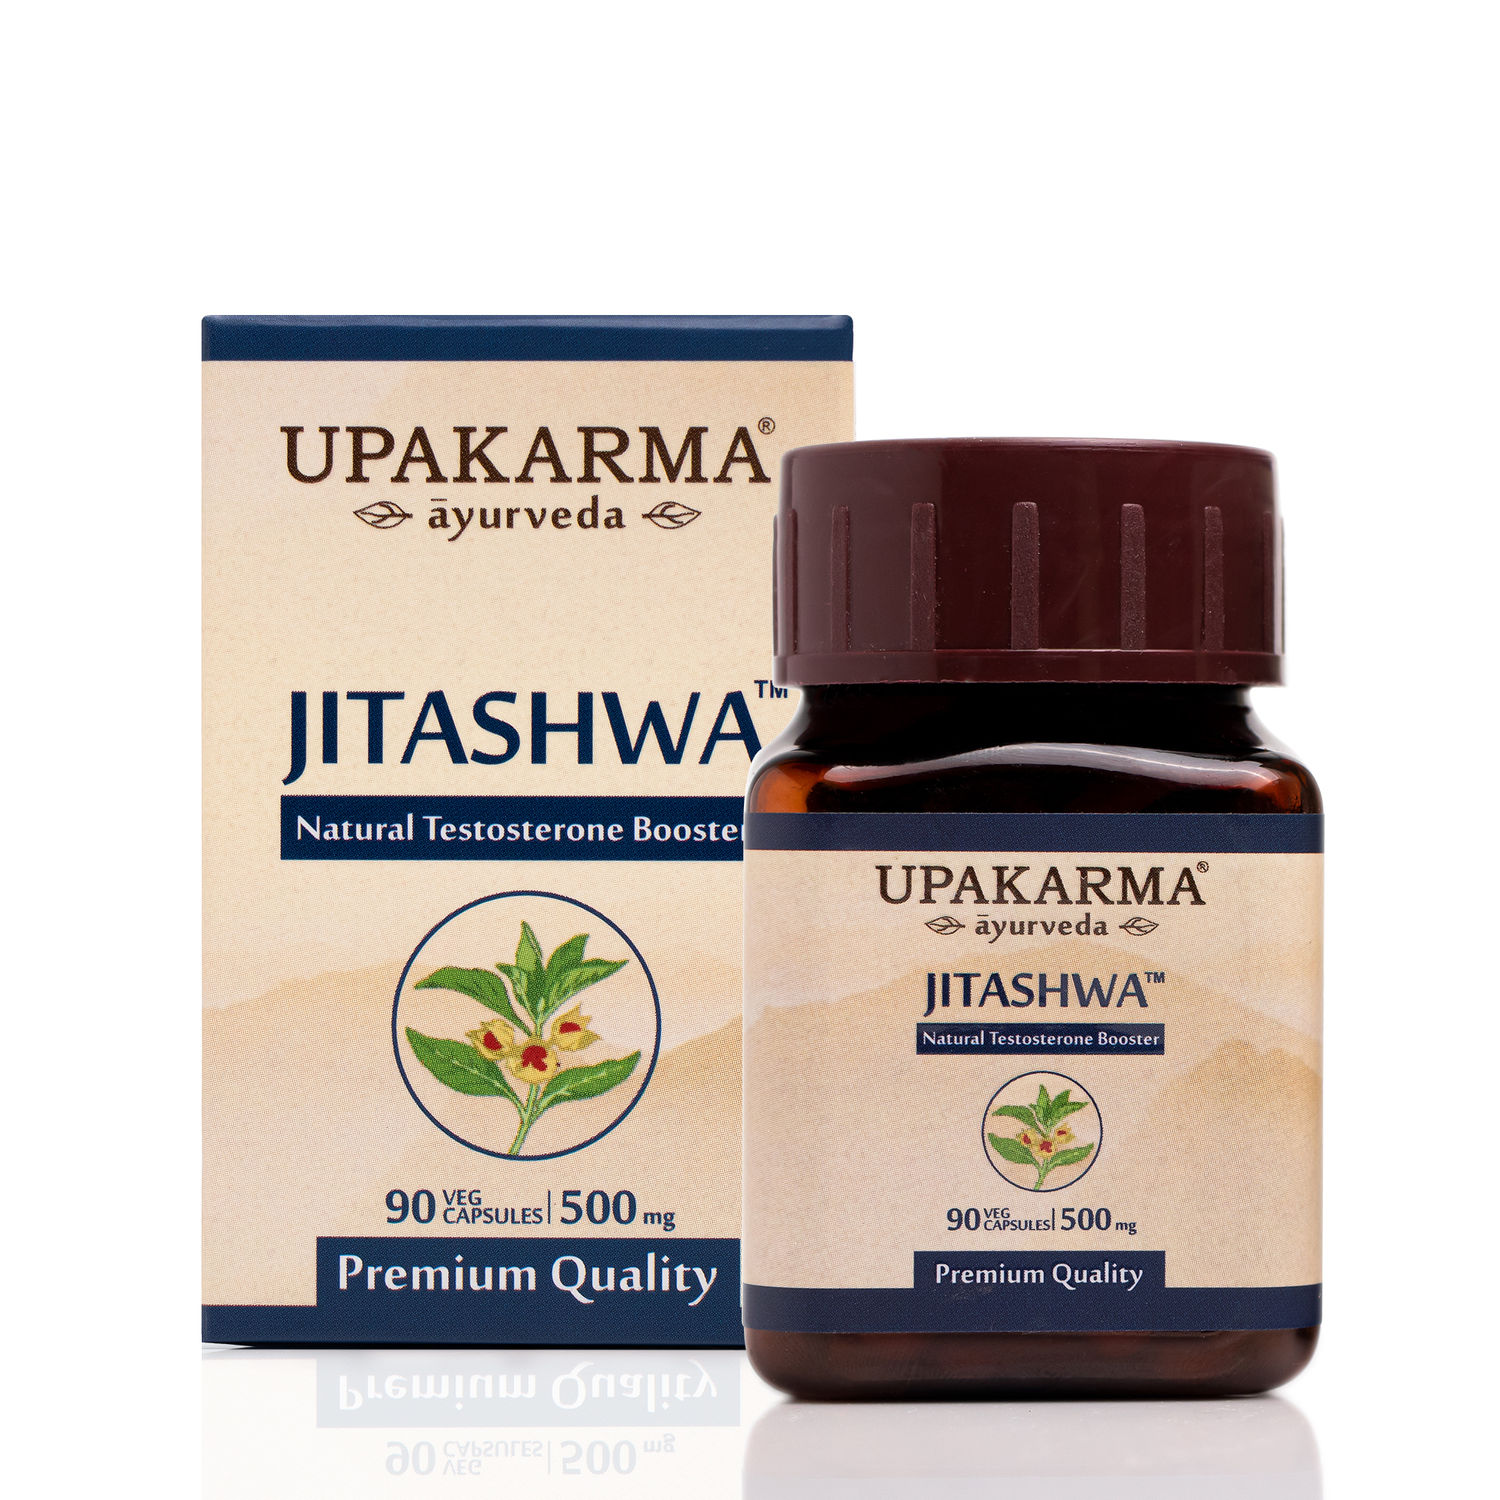 Upakarma Ayurveda Pure Shilajit And Ashwagandha Extract Jitashwa